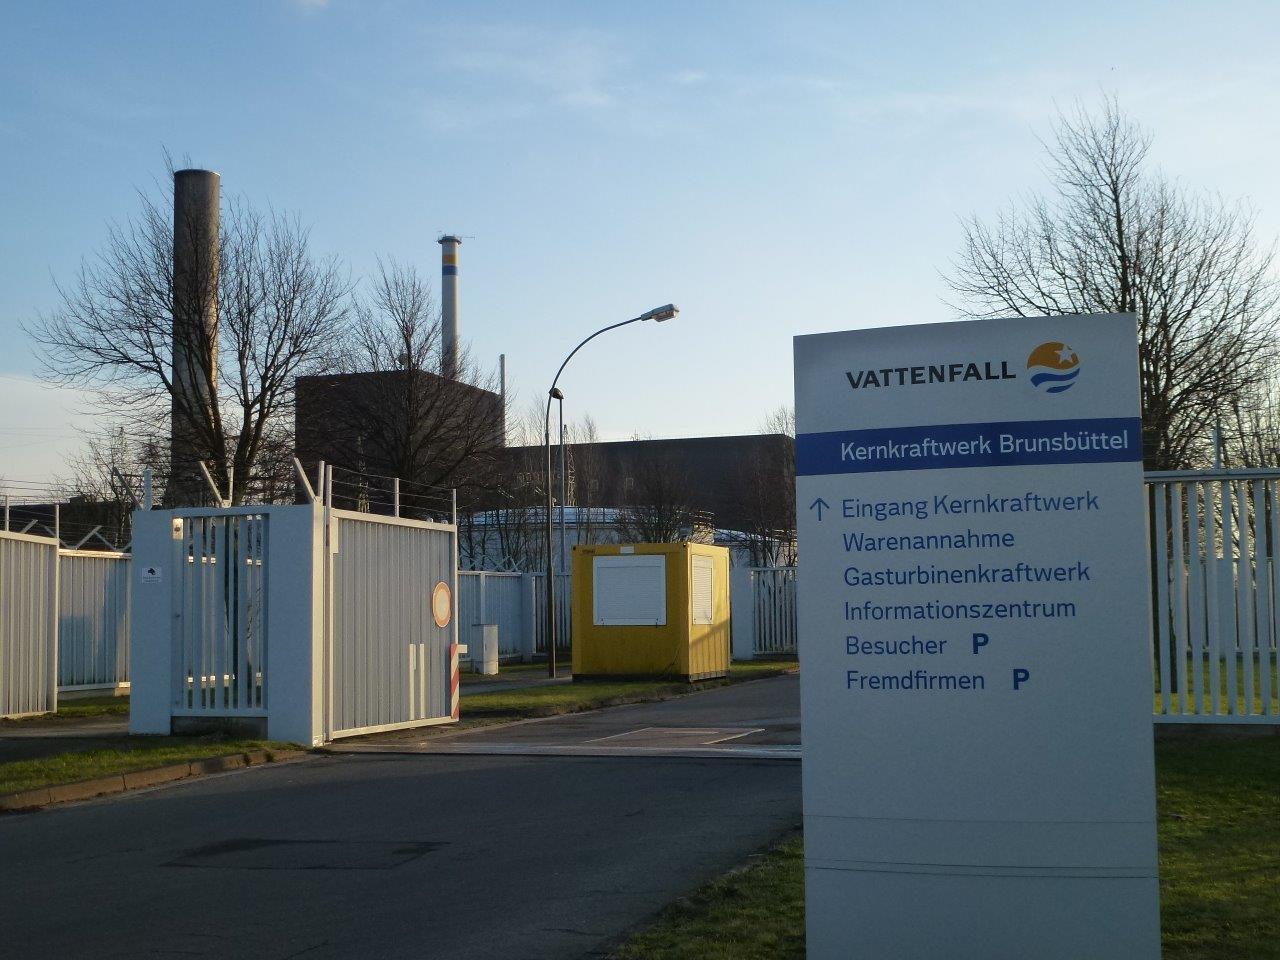 Vattenfall hochradioaktiv in Brunsbüttel: Einwendungen zum Neuantrag für Castor-Lager